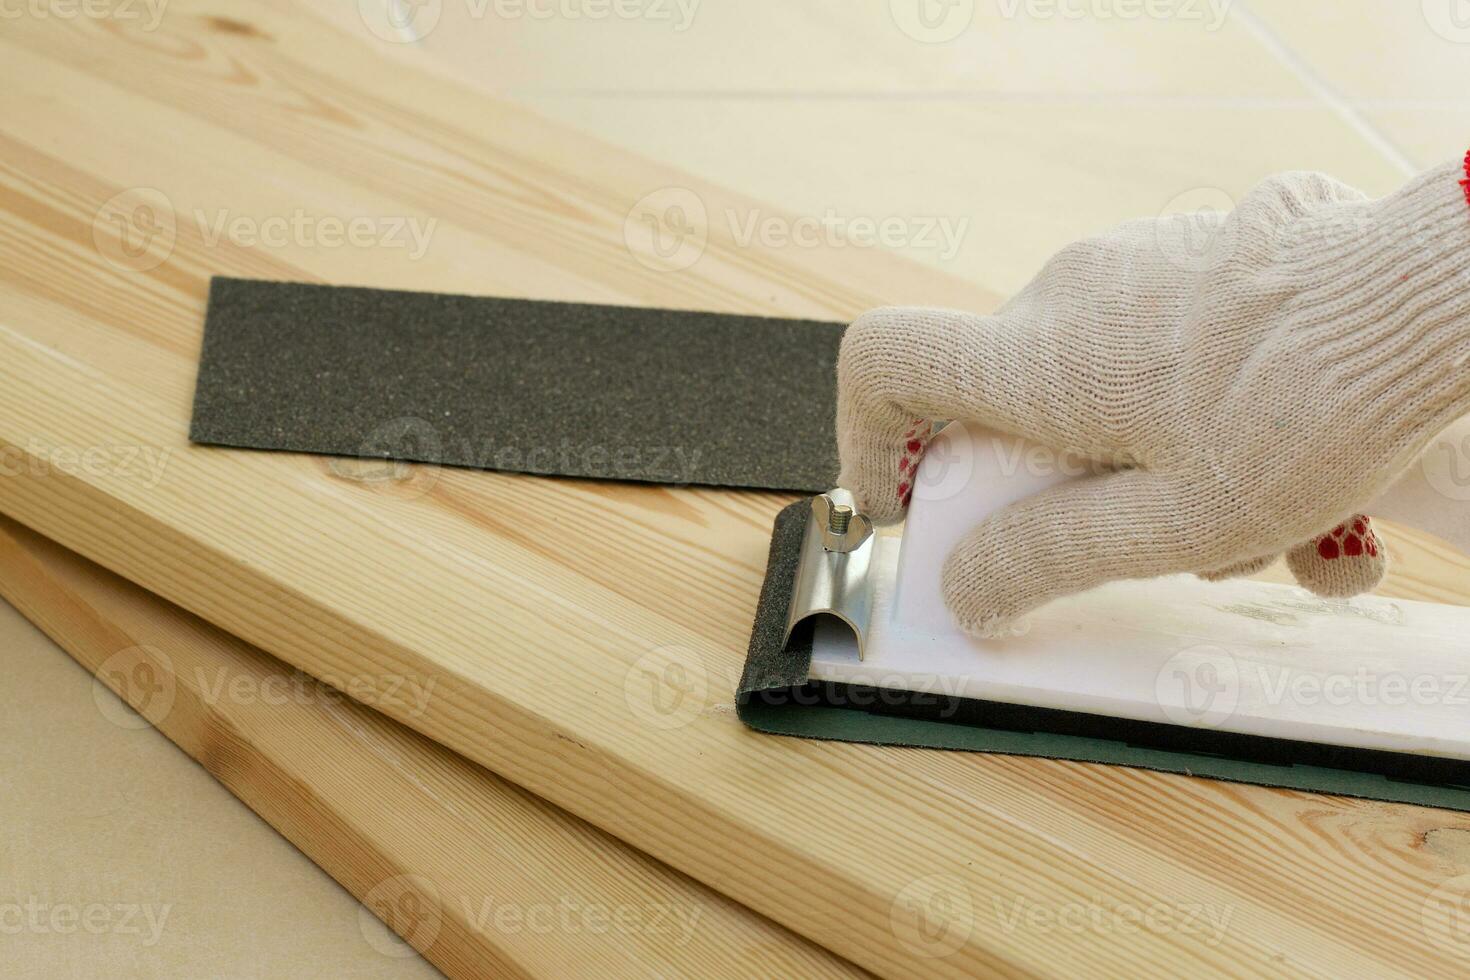 werkwijze van polijsten de hout voordat schilderen. detailopname foto